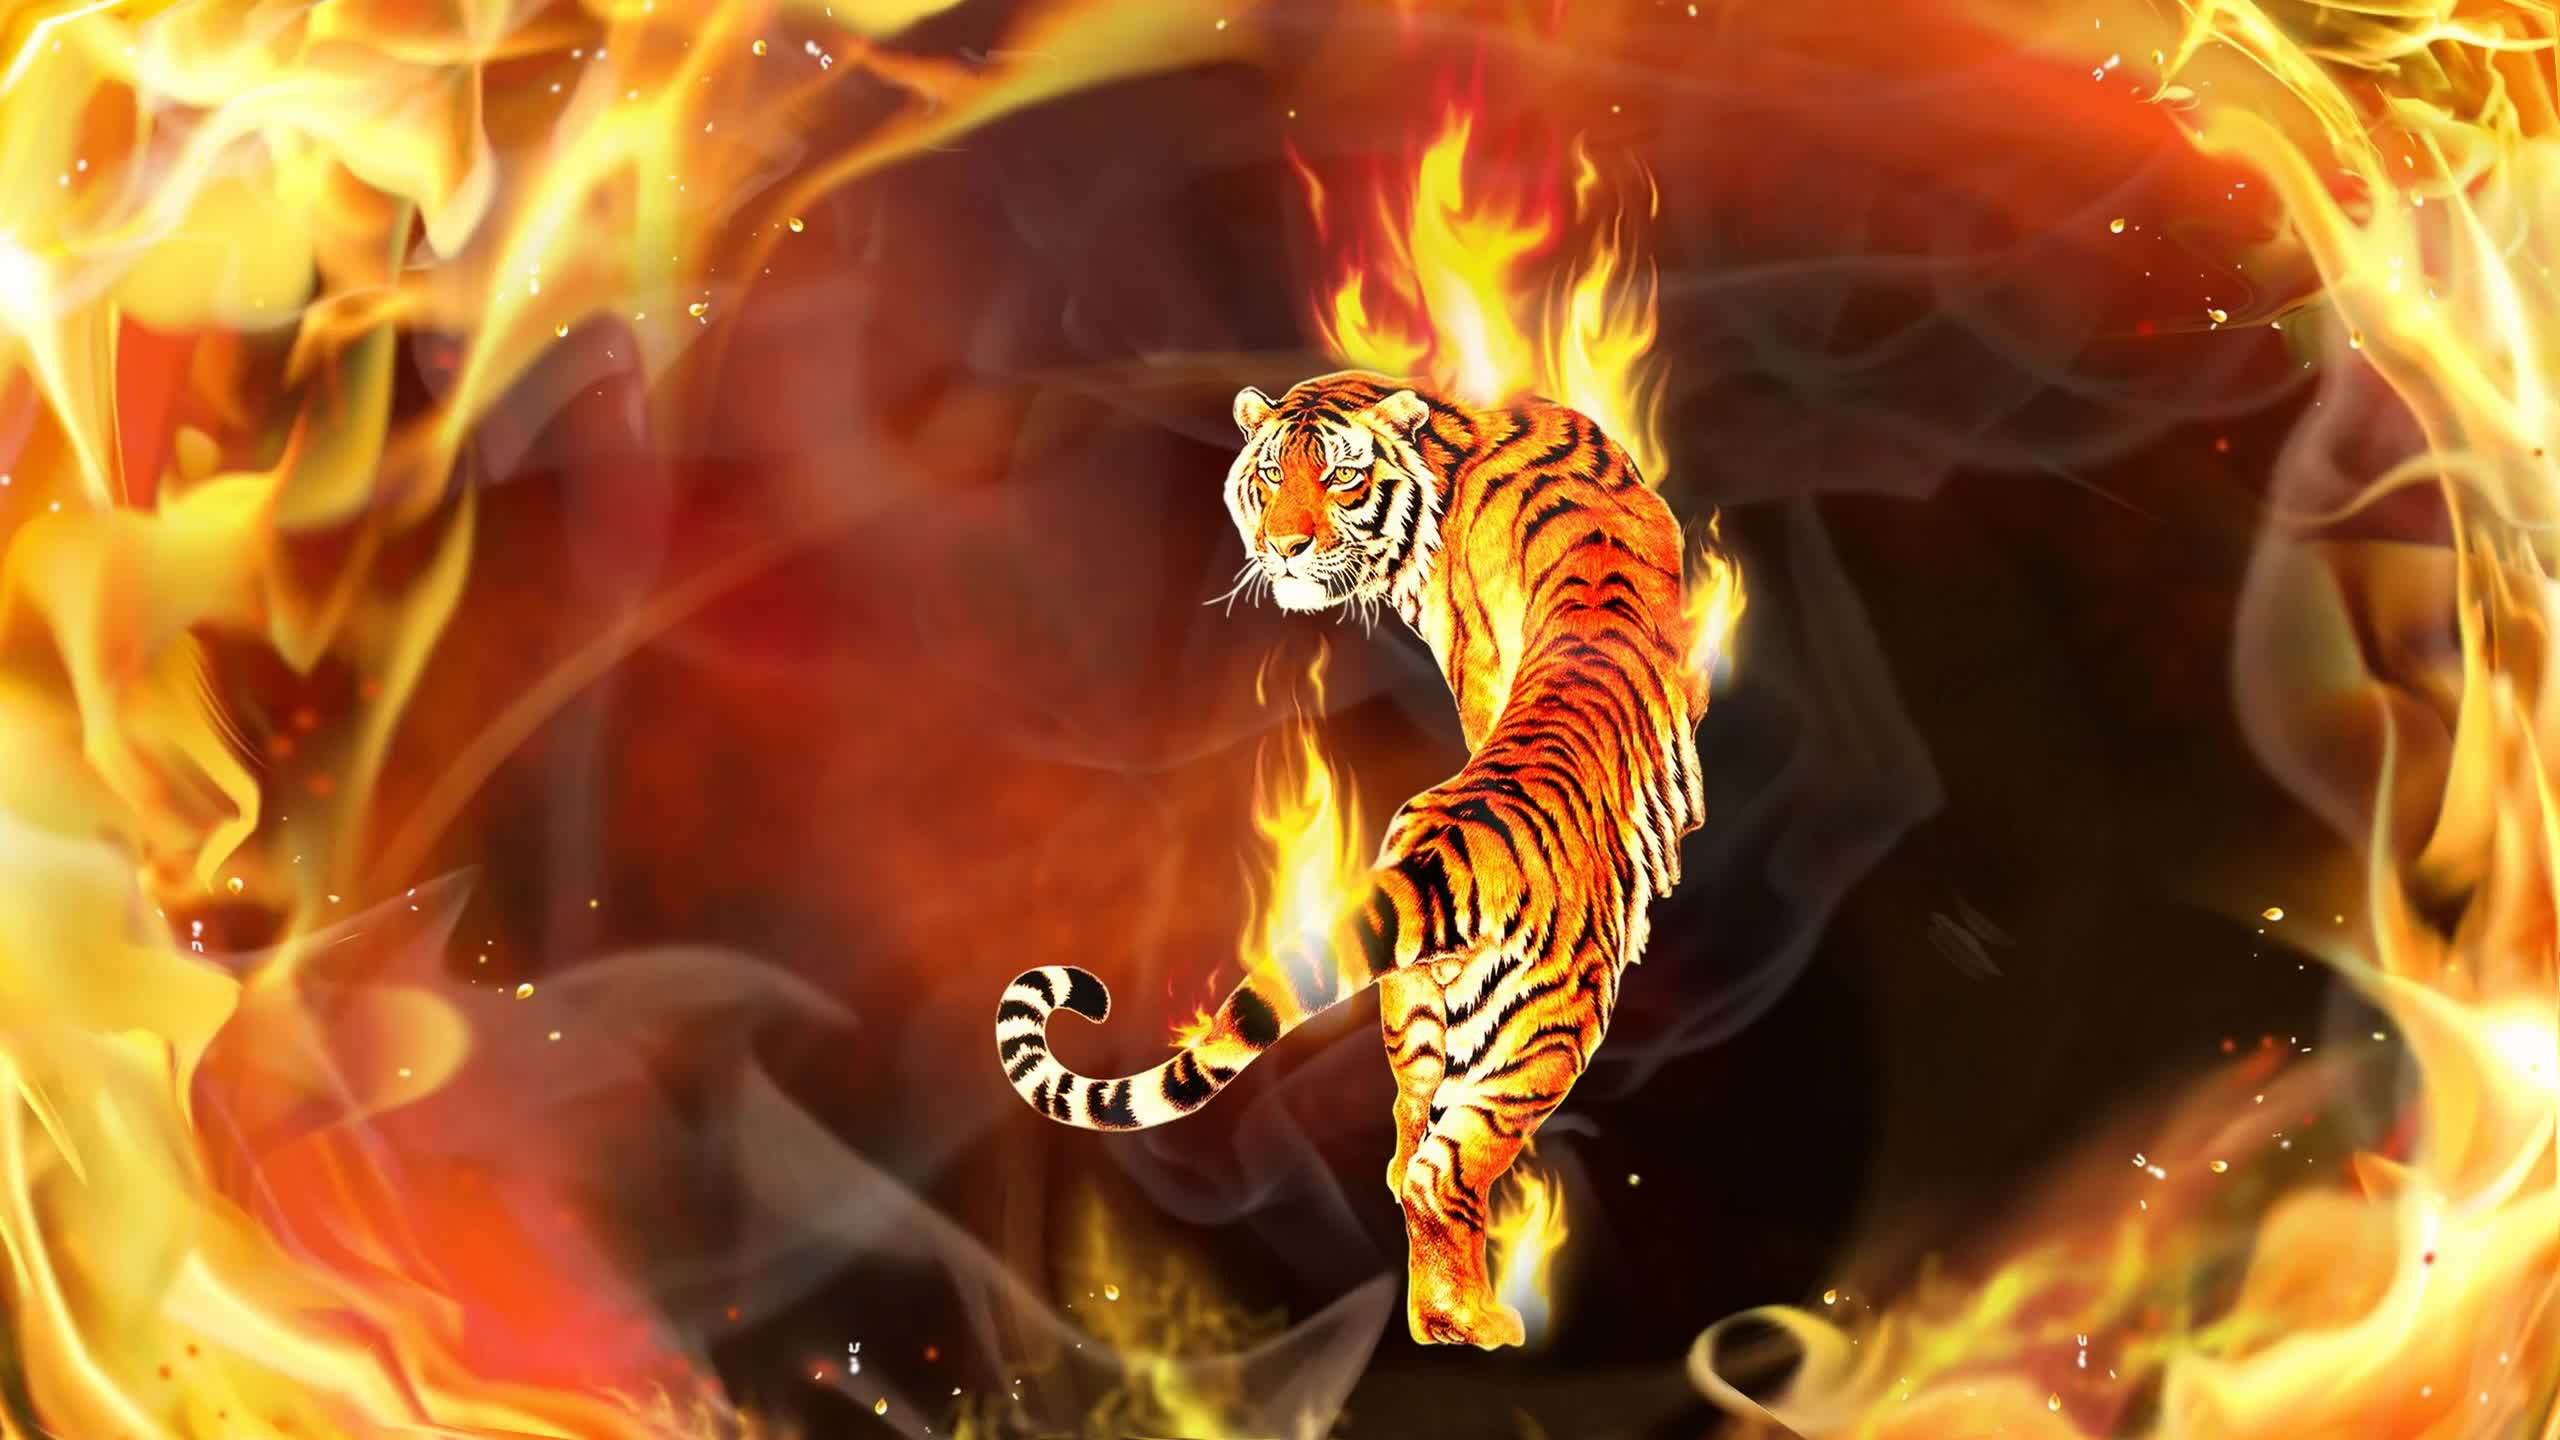 Tiger In Flames Digital Art 2k Live Wallpaper - Fondos De Pantalla De Tigres - HD Wallpaper 